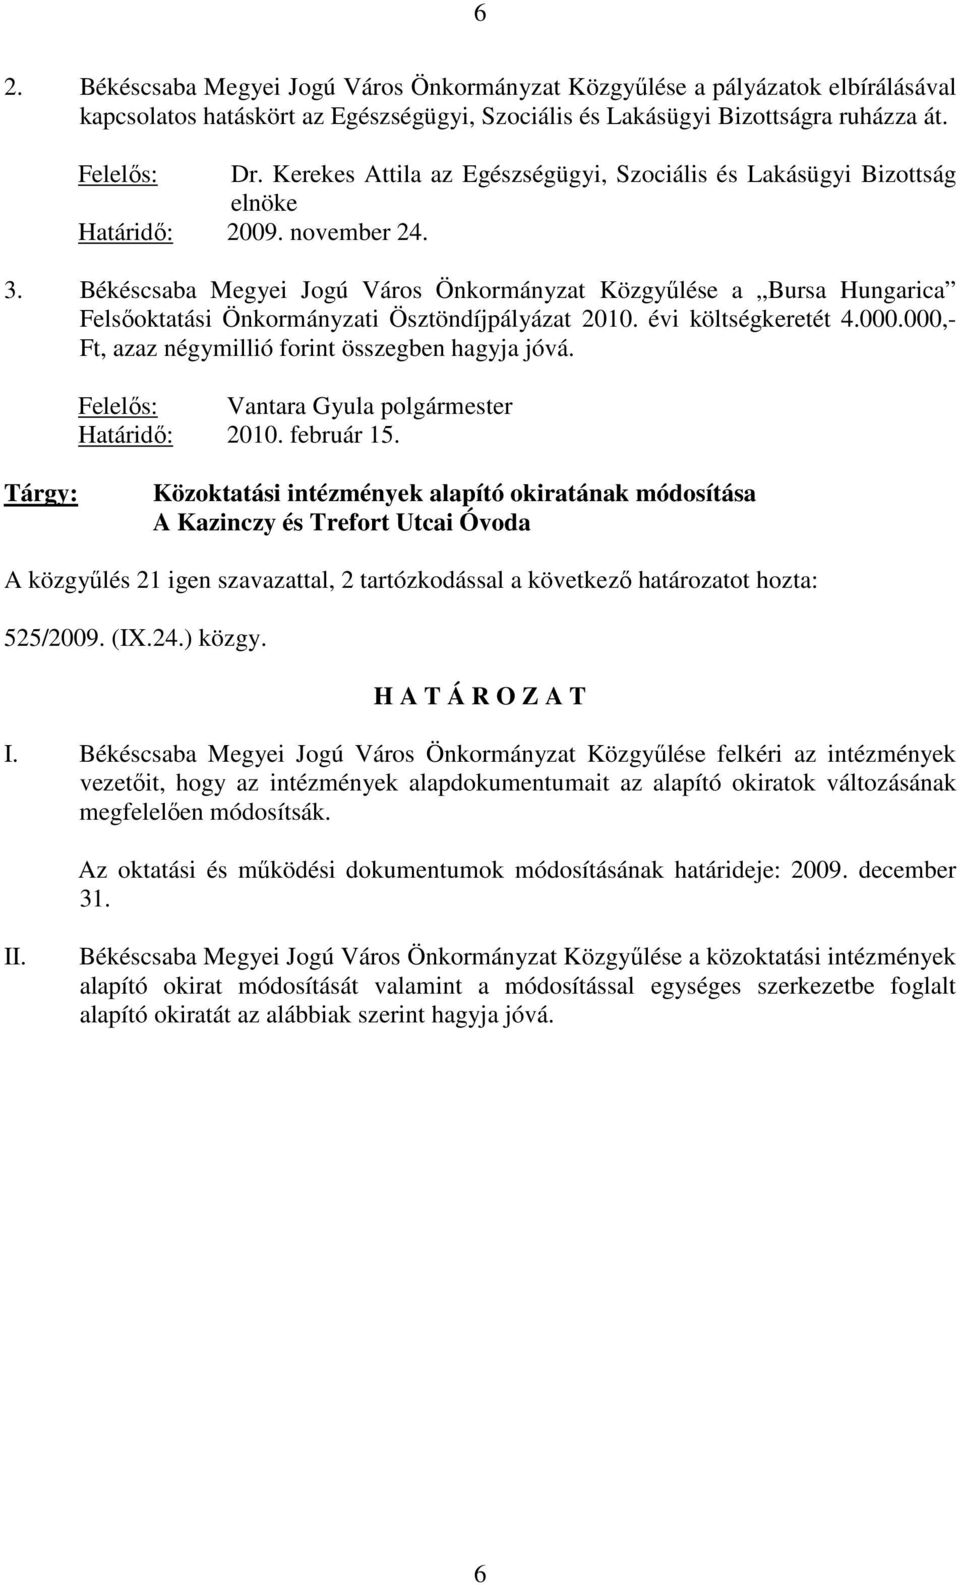 Békéscsaba Megyei Jogú Város Önkormányzat Közgyőlése a Bursa Hungarica Felsıoktatási Önkormányzati Ösztöndíjpályázat 2010. évi költségkeretét 4.000.